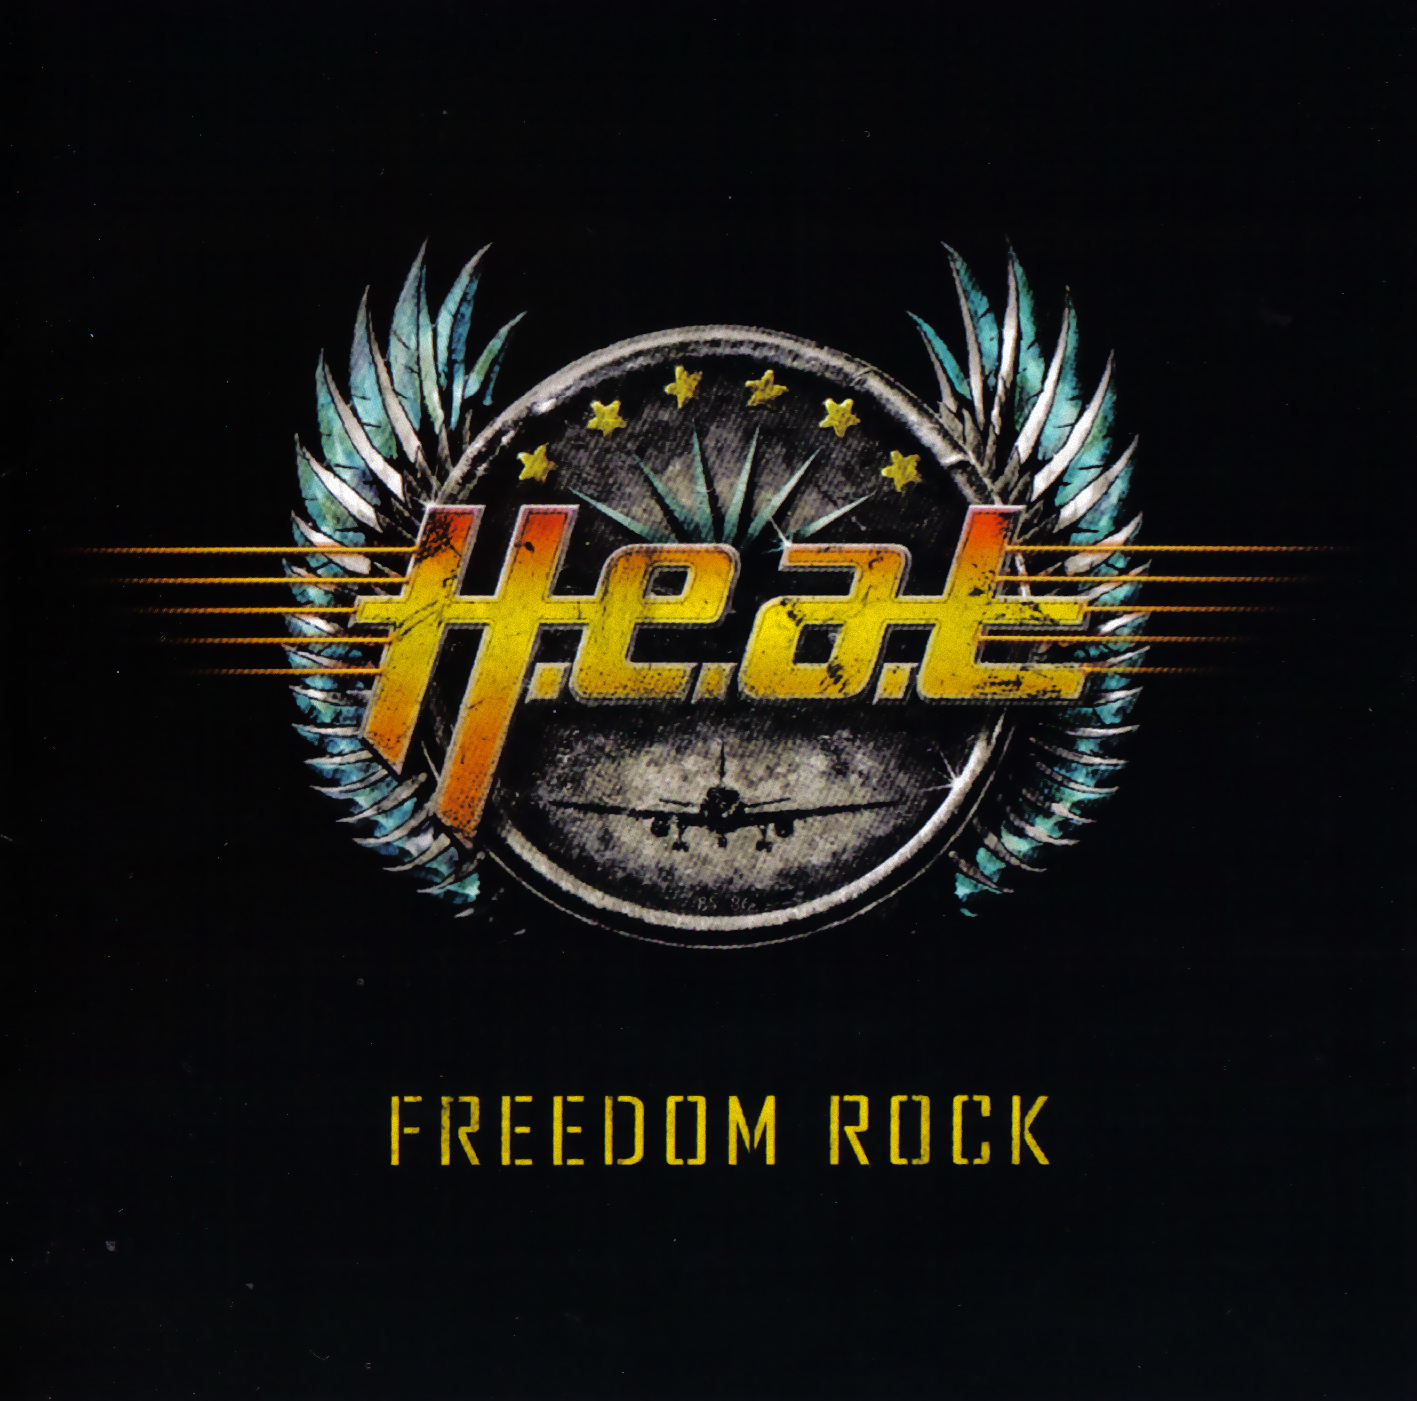 H e a d 1. H.E.A.T - Freedom Rock (2010). Обложки альбомов h.e.a.t. 2010 - Freedom Rock. H.E.A.T. дискография.